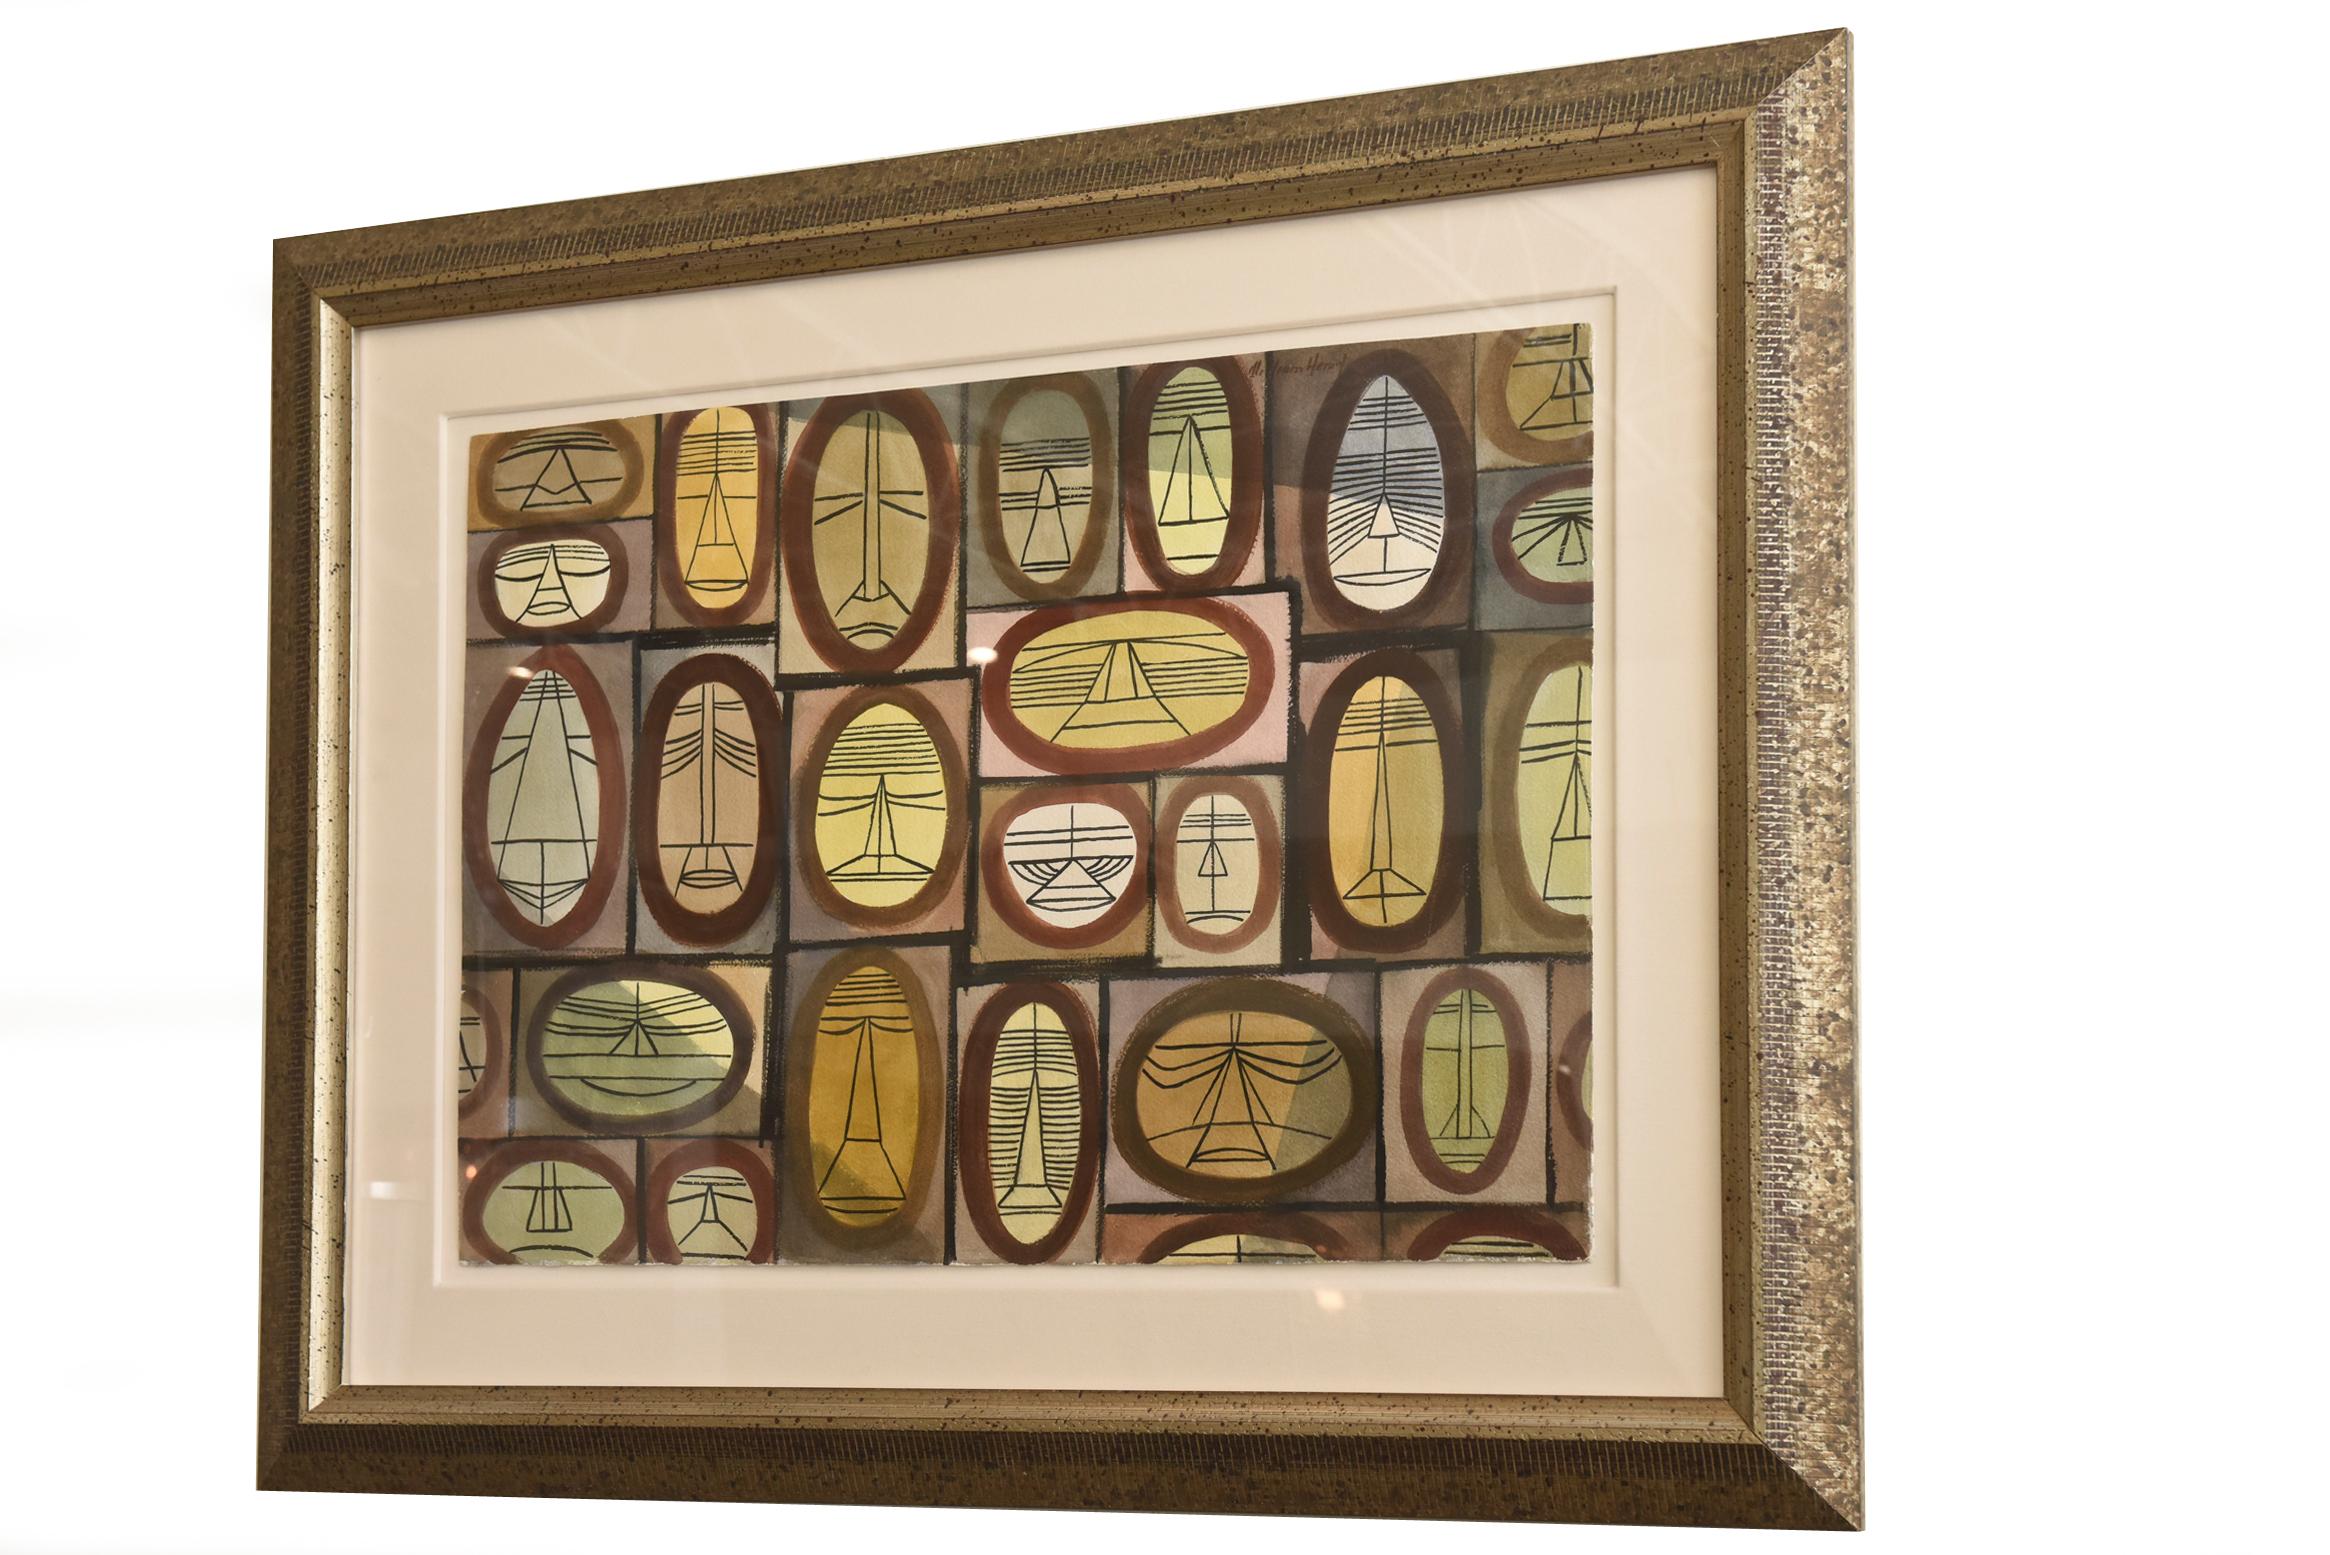 Dieses einzigartige horizontale Aquarell von William Henry aus der Jahrhundertmitte ist eine Kombination aus kubistischen Einzelgesichtern und afrikanischen Einflüssen. Jede Seite ist in Form eines Rechtecks oder Kreises umrandet, der wiederum von